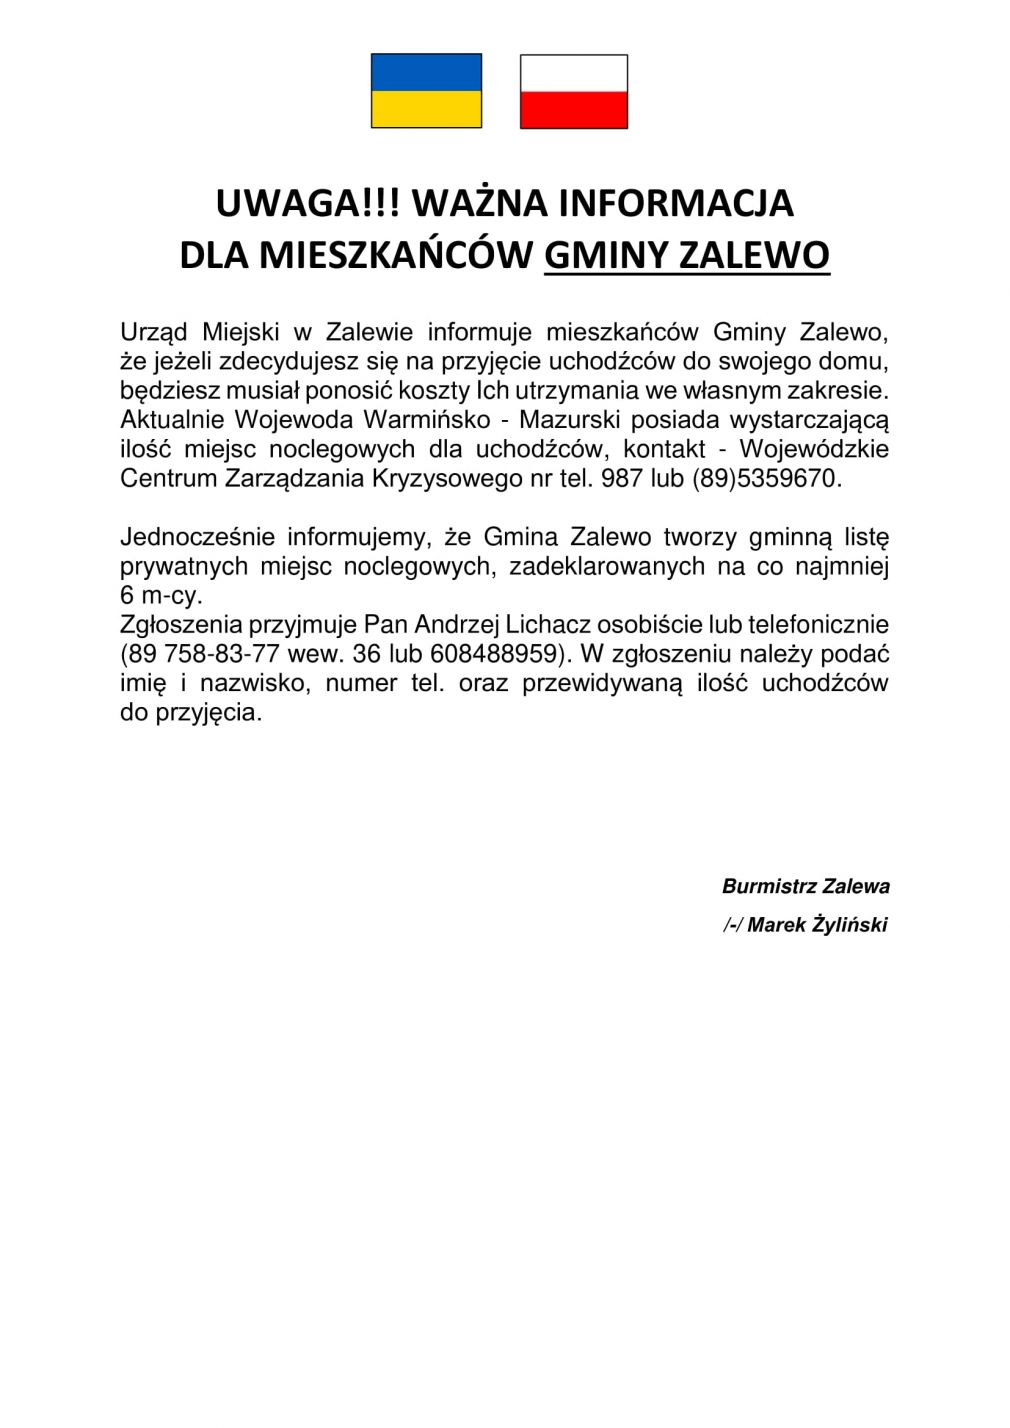 Ważna informacja dla mieszkańców Gminy Zalewo oraz dla uchodźców z Ukrainy.